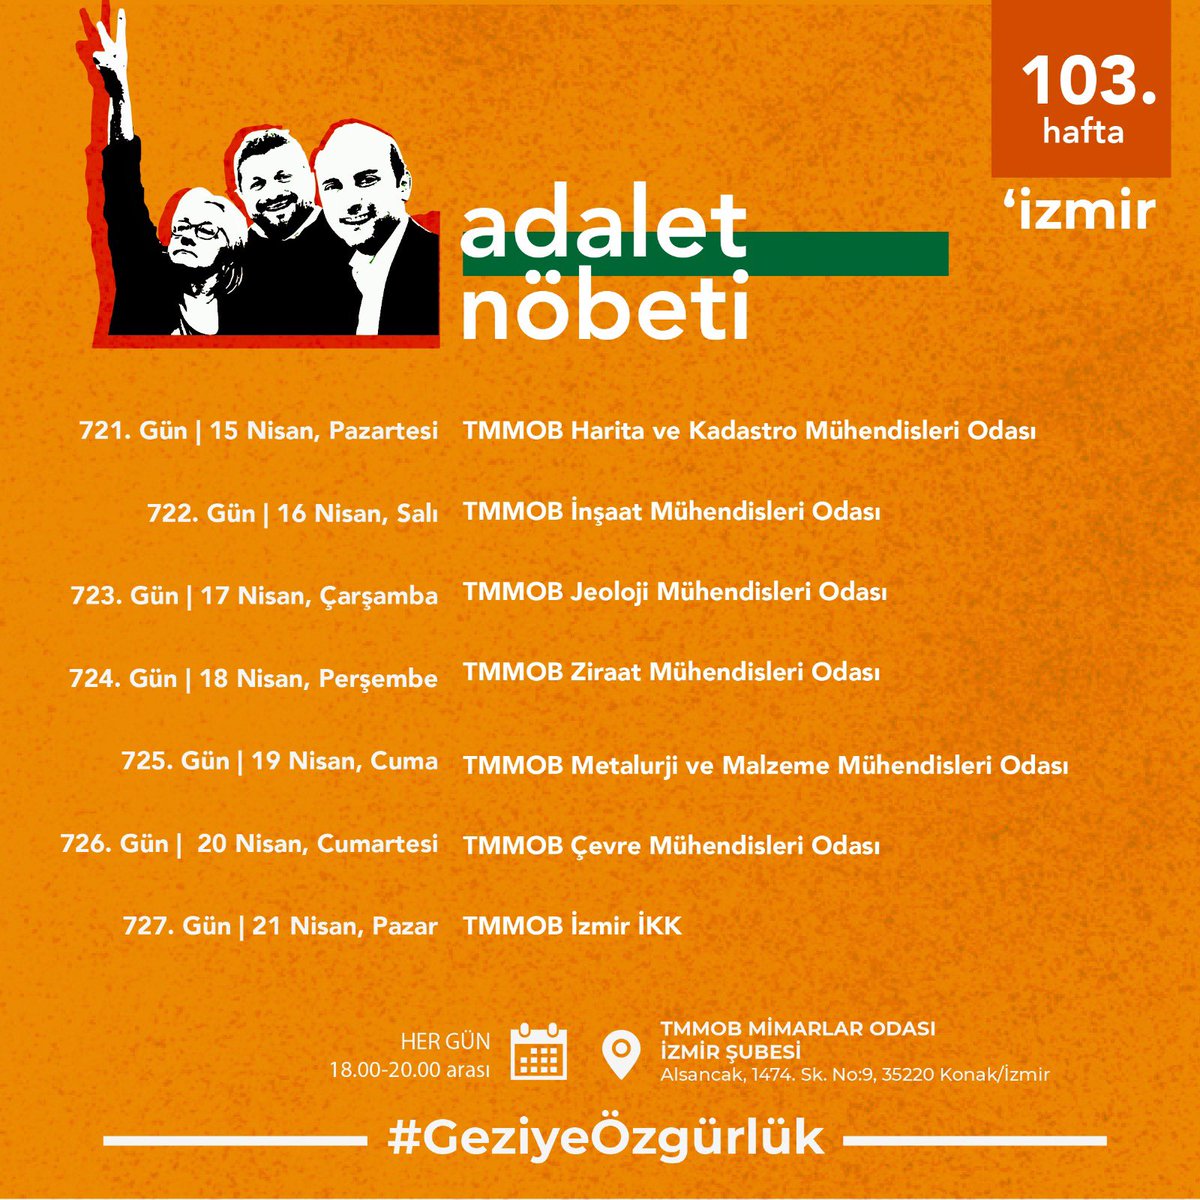 103. Hafta | İzmir Adalet Nöbeti programı 🗓 Her gün ⏰ 18.00-20.00 📍 TMMOB Mimarlar Odası İzmir Şubesi #GeziyeÖzgürlük #GeziyiSavunuyoruz